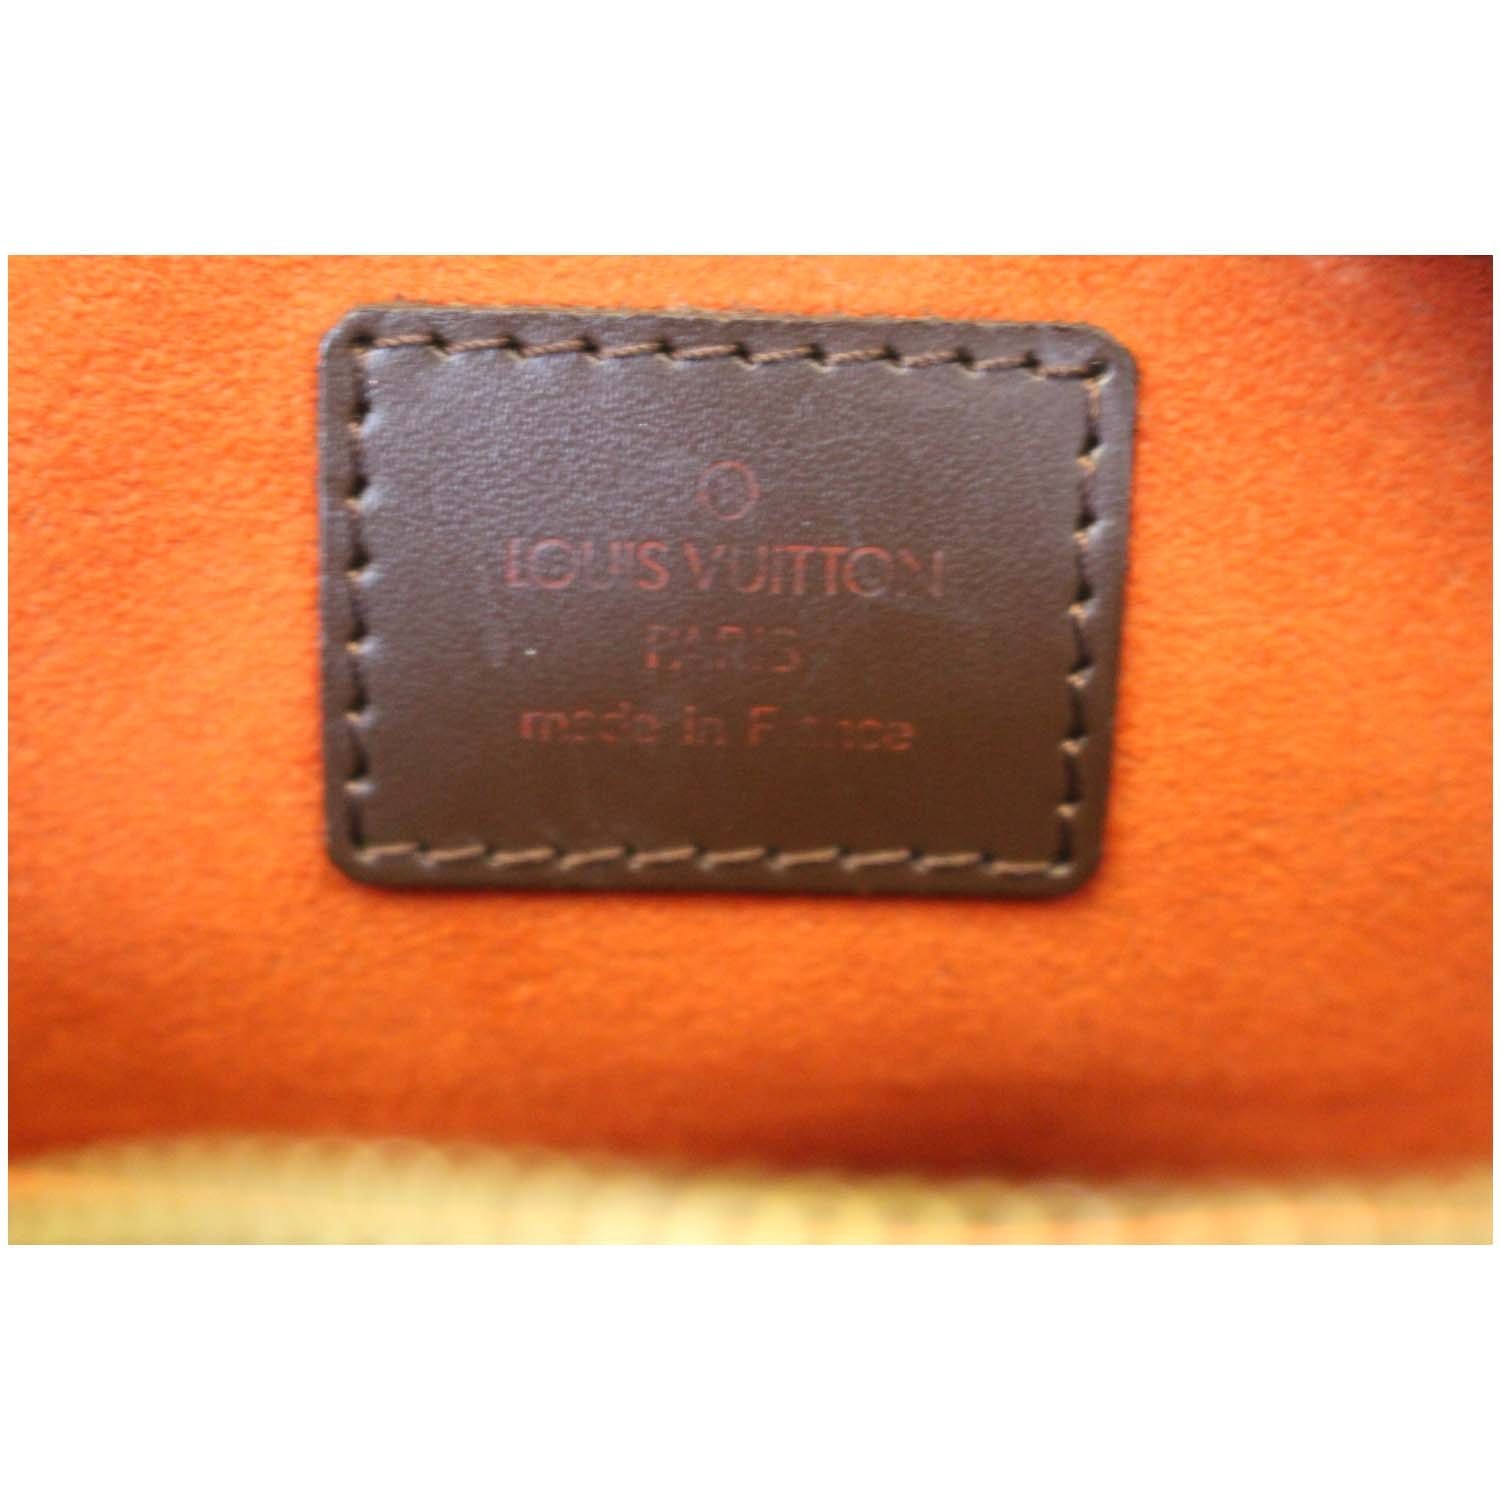 Louis Vuitton Authentication - ITEM 27 Damier Ipanema GM 